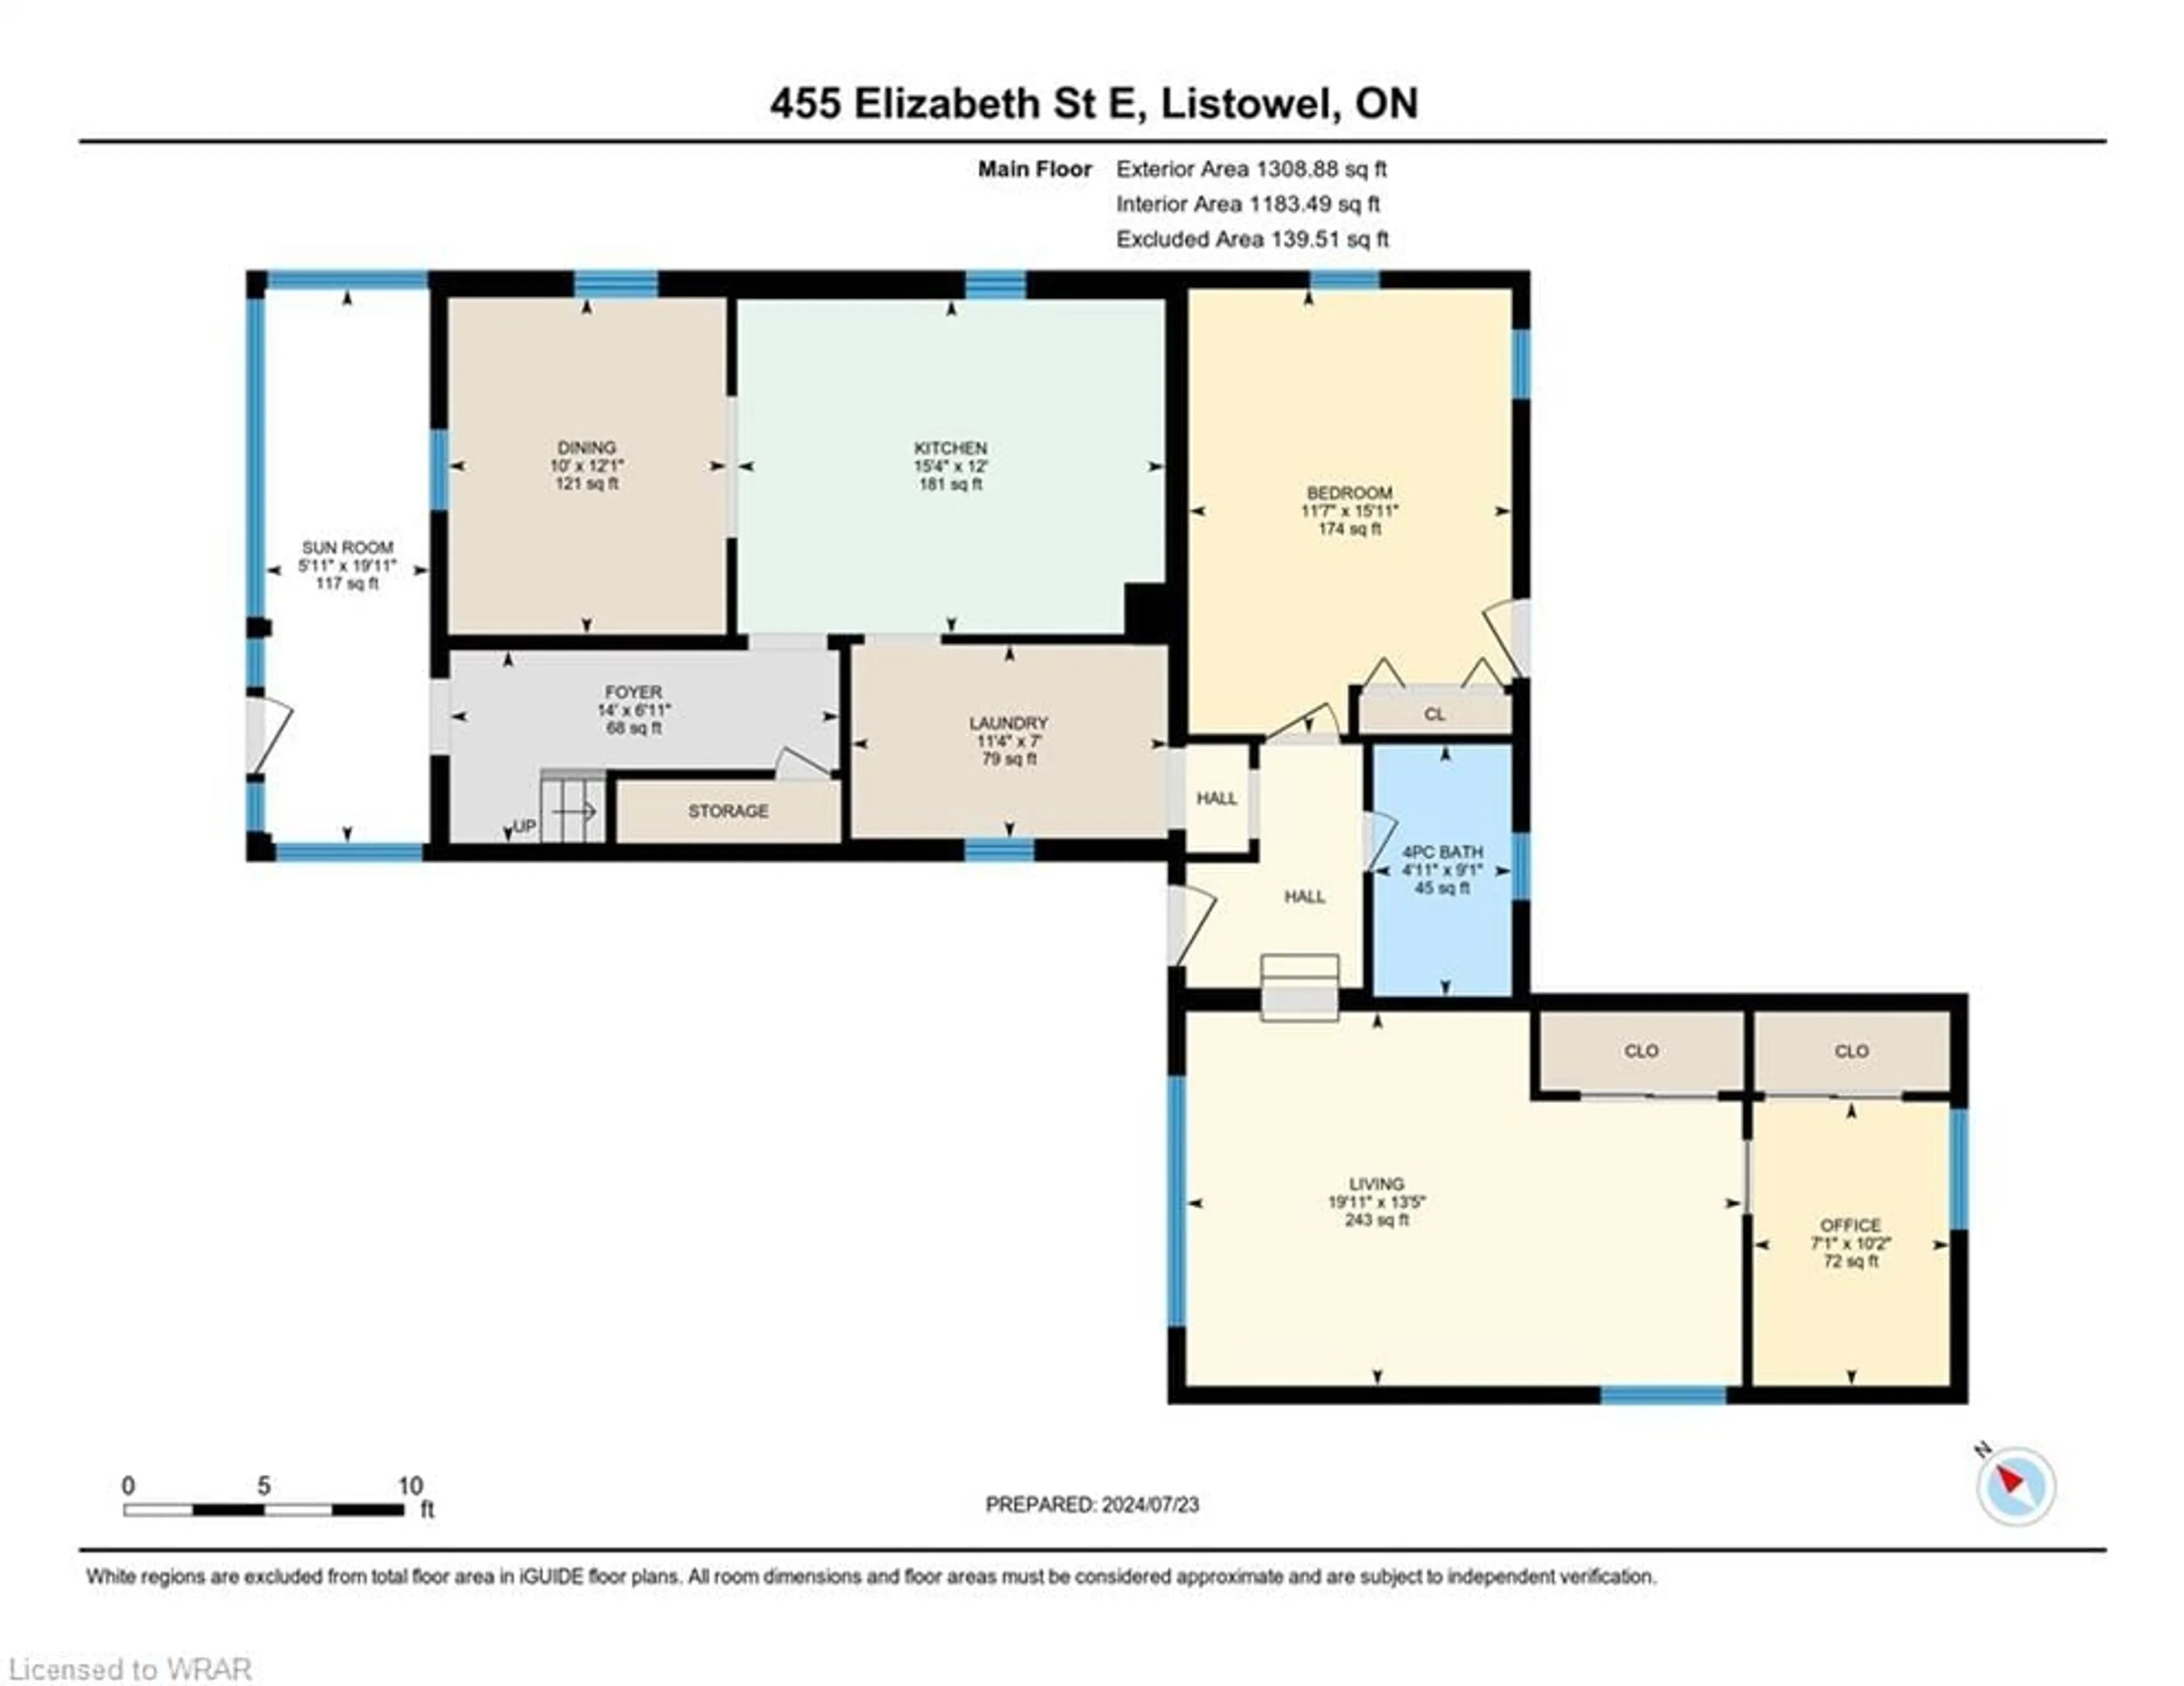 Floor plan for 455 Elizabeth St, Listowel Ontario N4W 2P7